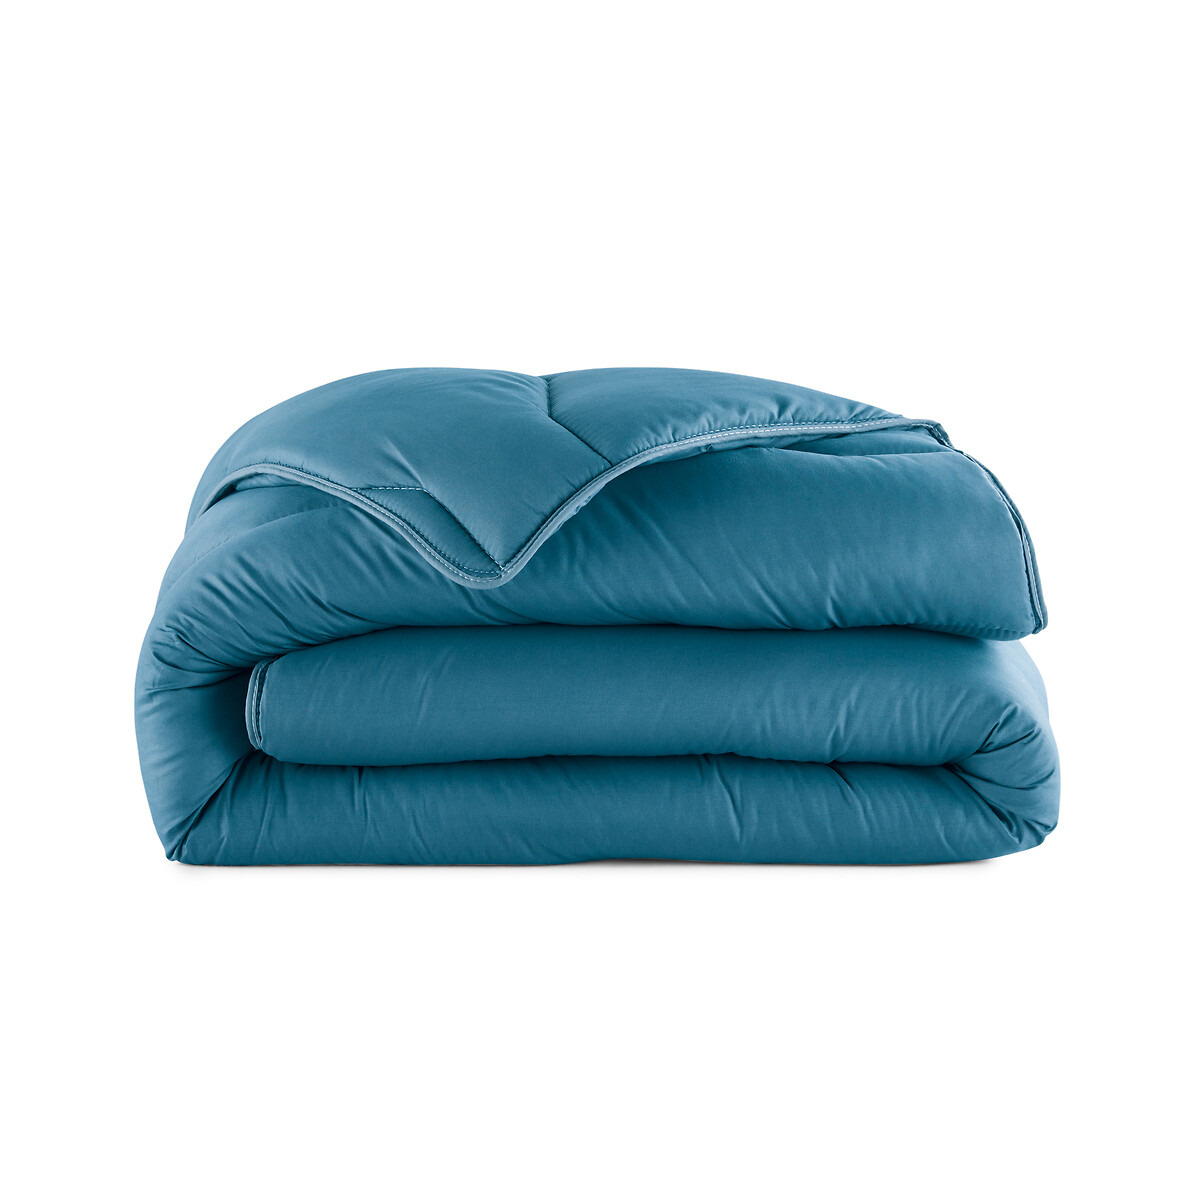 Одеяло LA REDOUTE INTERIEURS 100 полиэстер специально для лета 260 x 240 см синий, размер 260 x 240 см - фото 2